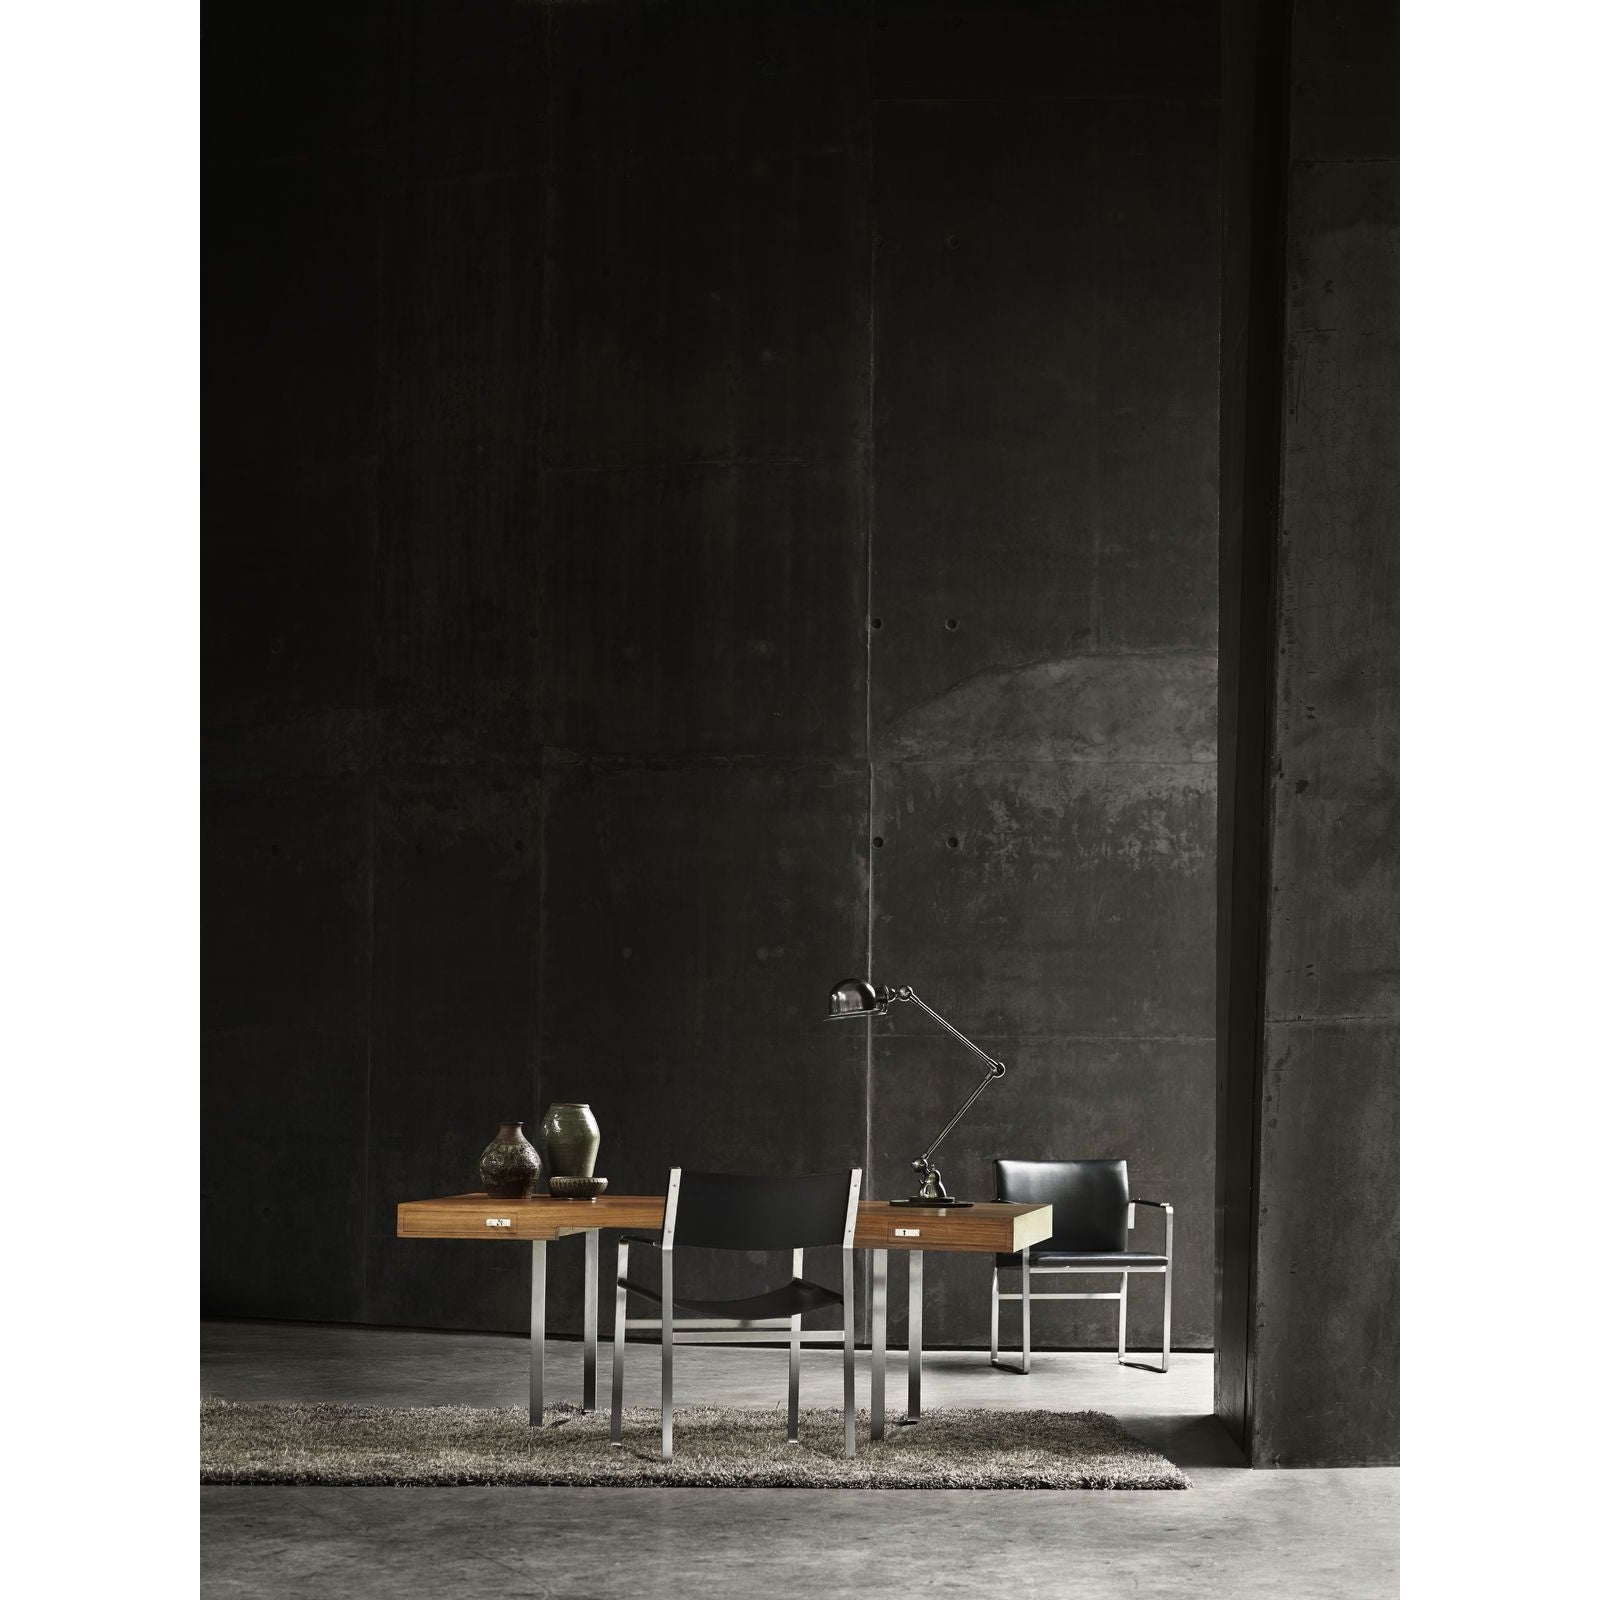 Carl Hansen CH111 stol rostfritt stål, svart läder